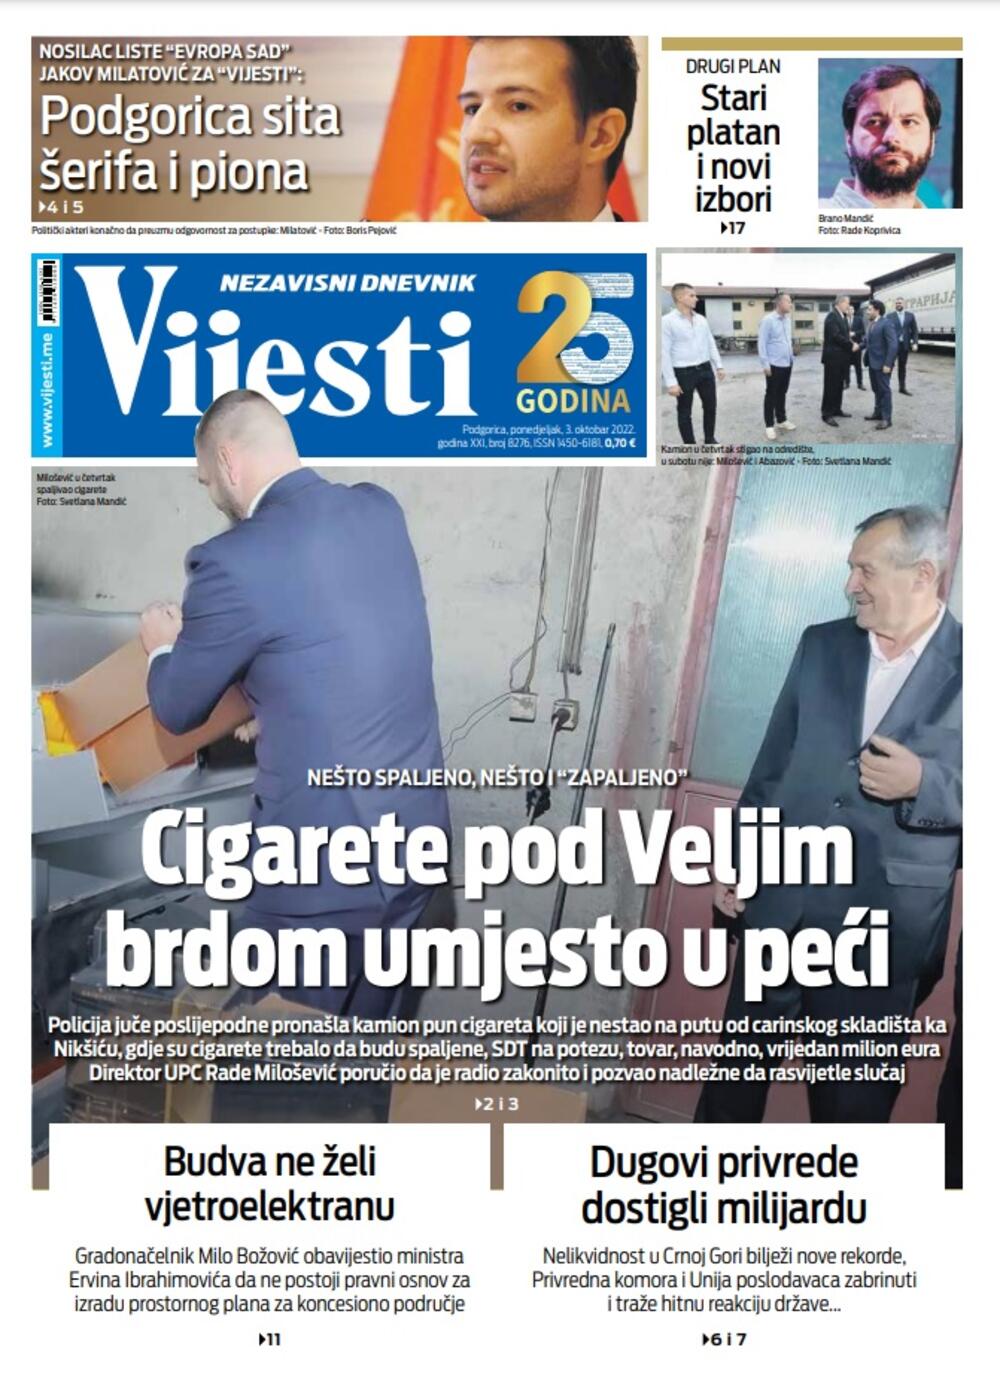 Naslovna strana "Vijesti" za 3. oktobar 2022., Foto: Vijesti